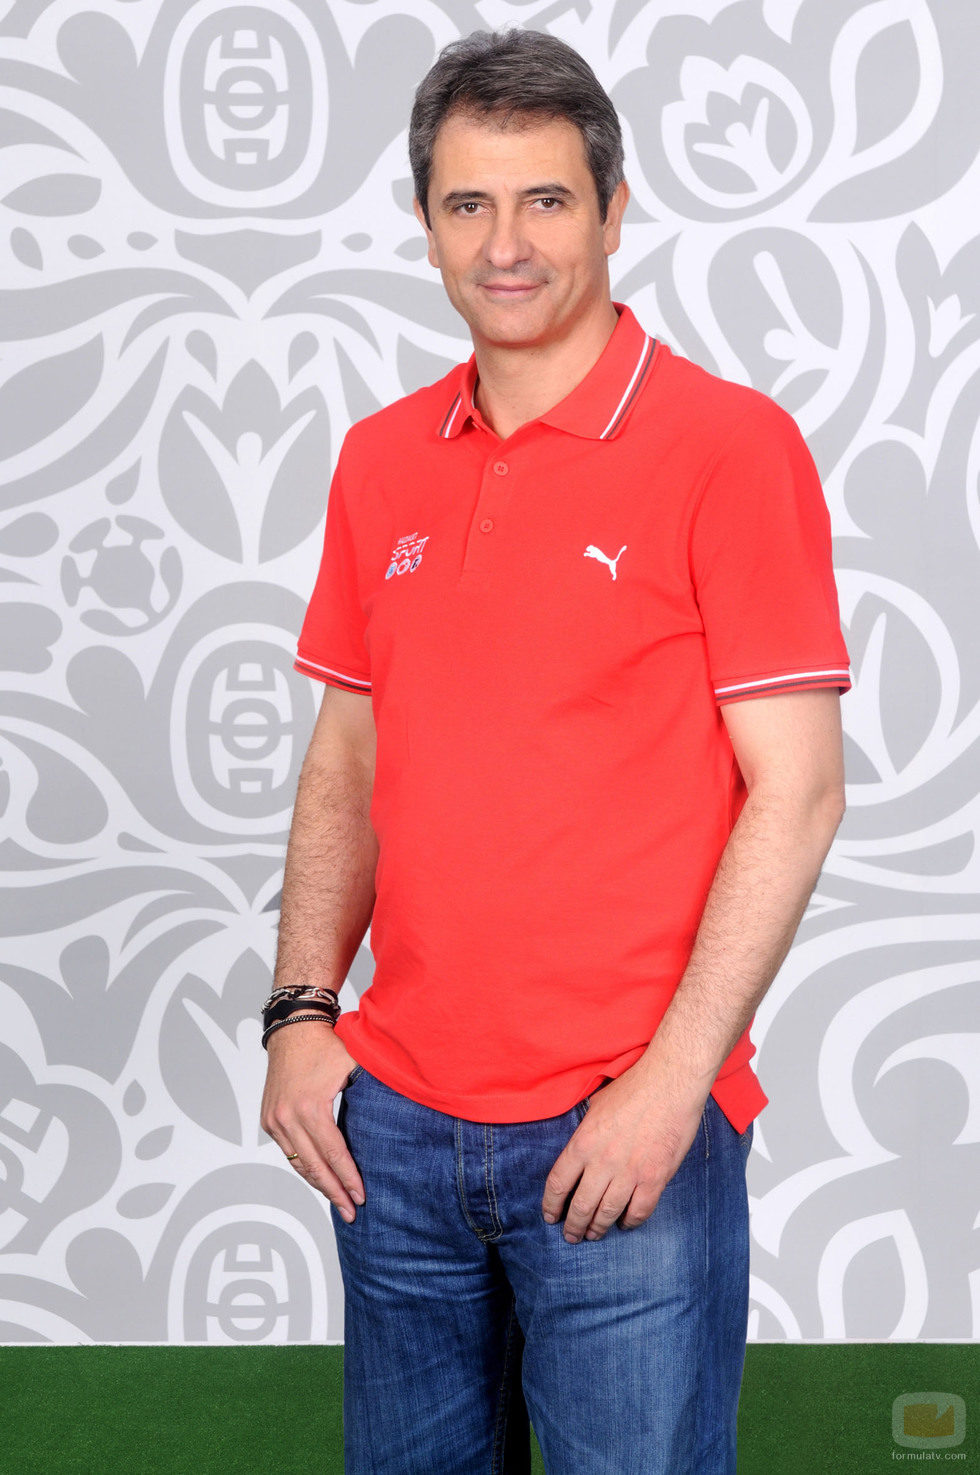 Manolo Lama es el presentador de la Eurocopa 2012